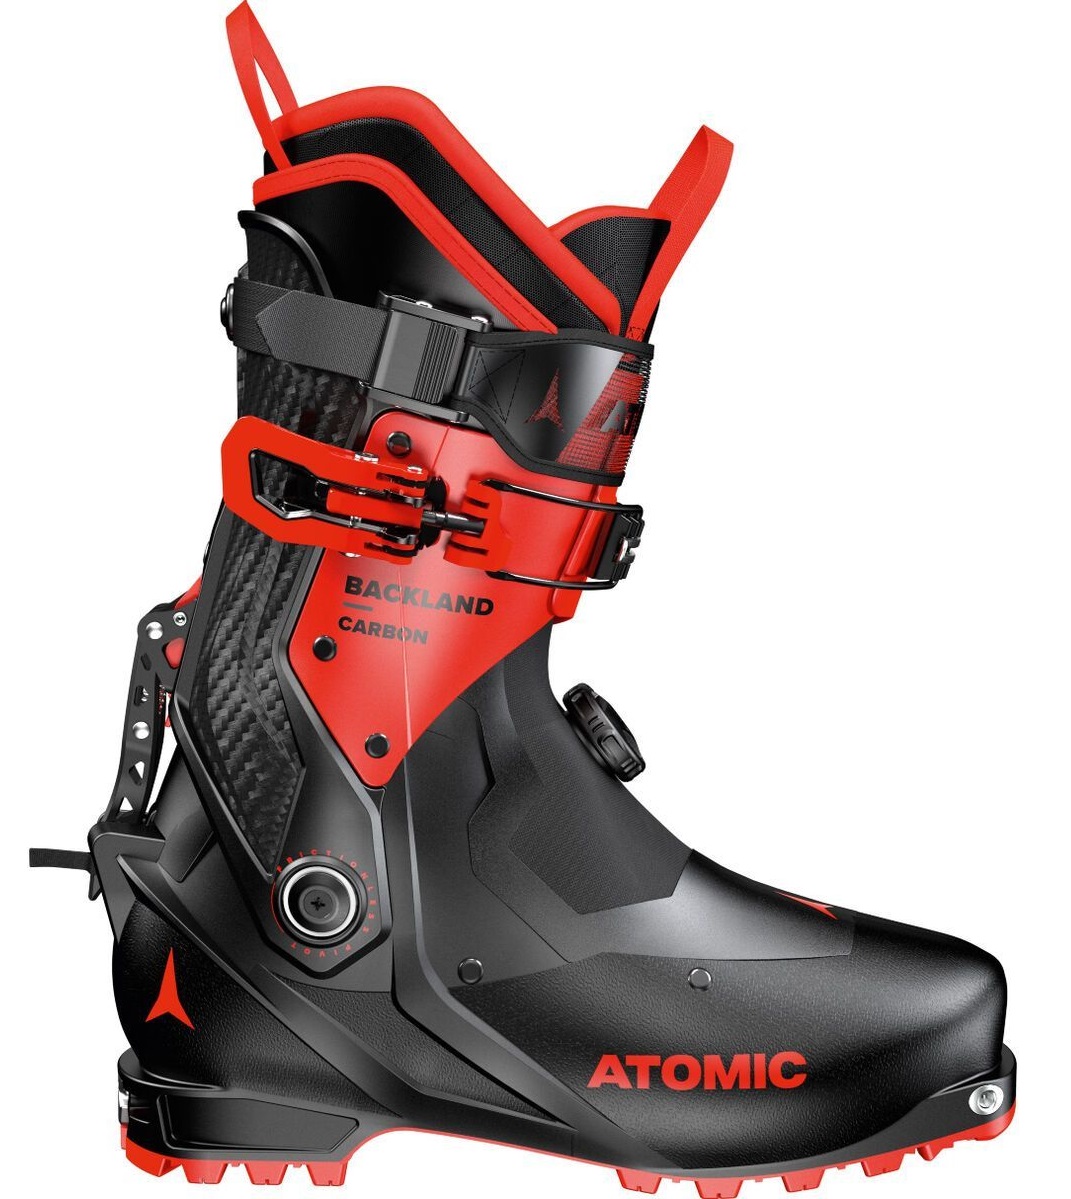 Ботинки горнолыжные Atomic 21-22 Backland Carbon Black/Red, размер 30,0/30,5 см